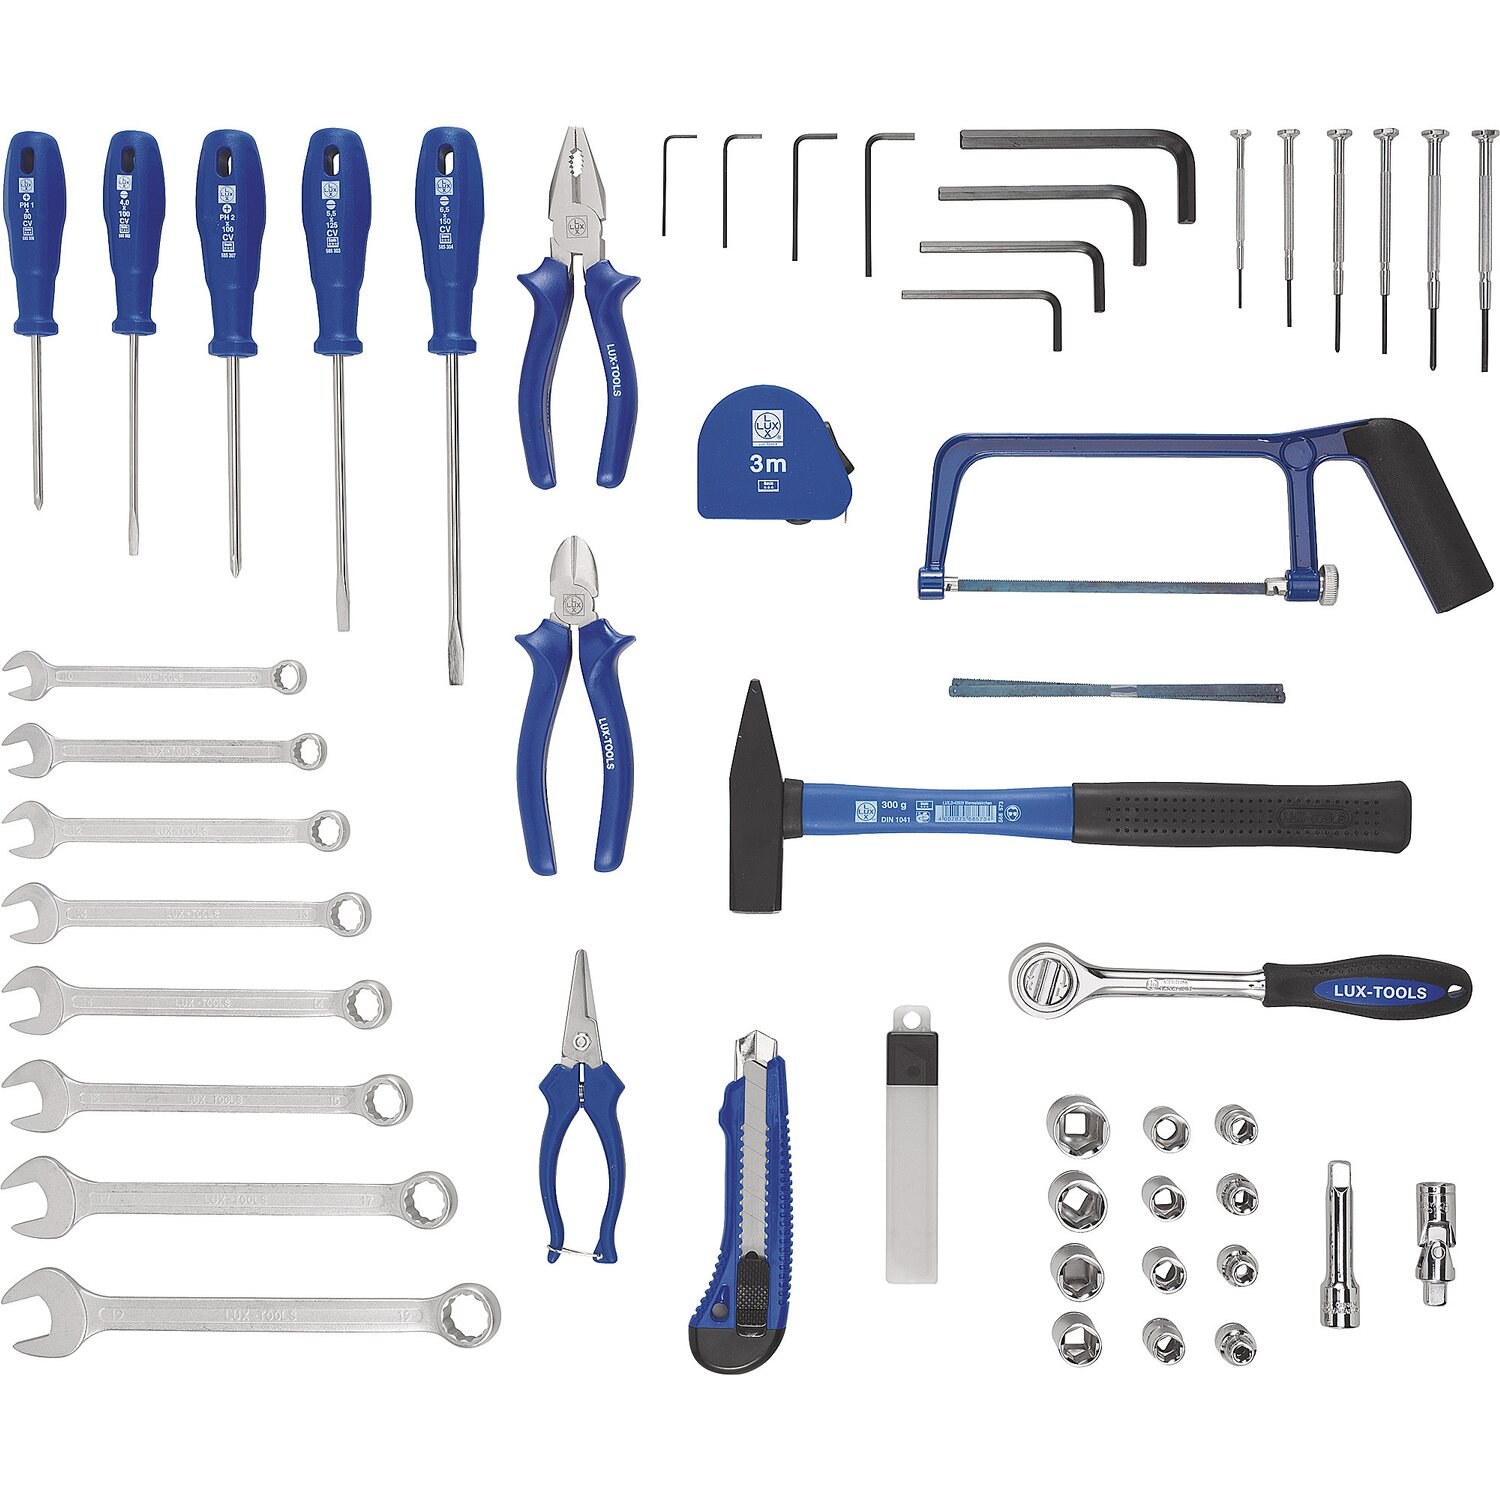 Набор Lux Tools инструментов слесарно монтажный 70 шт. Lux Tools набор инструментов синий 43. Набор инструментов Lux-Tools WZK-145 Classic. Lux Tools набор инструментов 54. Набор для сборки мебели